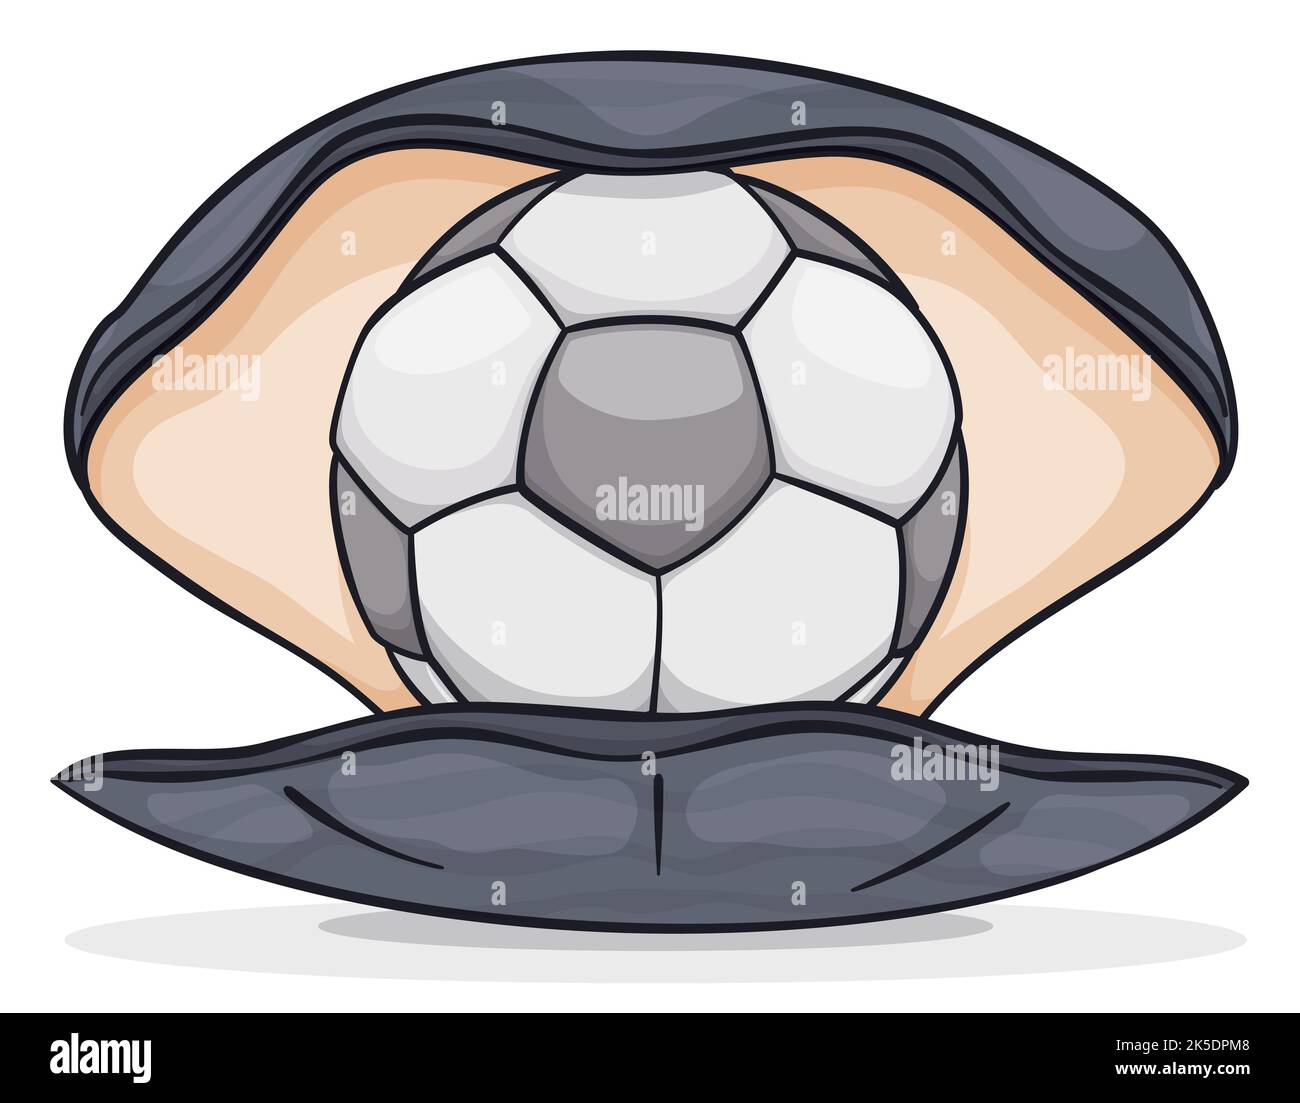 Curioso ostrica aperta, tenendo all'interno di una palla da calcio d'argento come una perla. Design isolato in stile cartone animato. Illustrazione Vettoriale